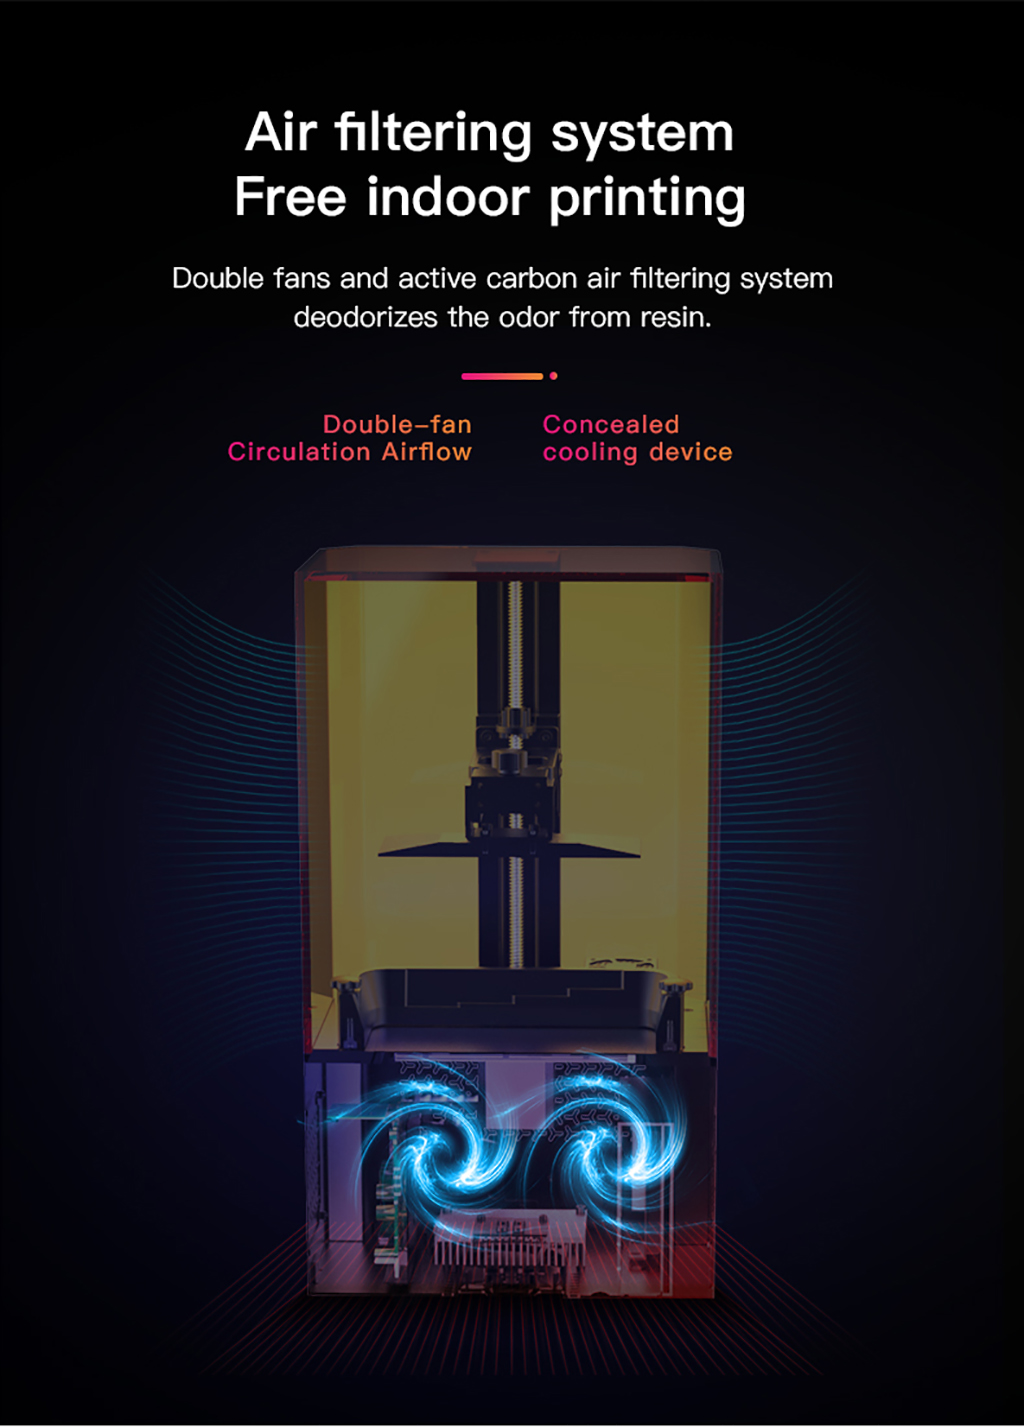 Creality LD-002R LCD Resin 3D Printer